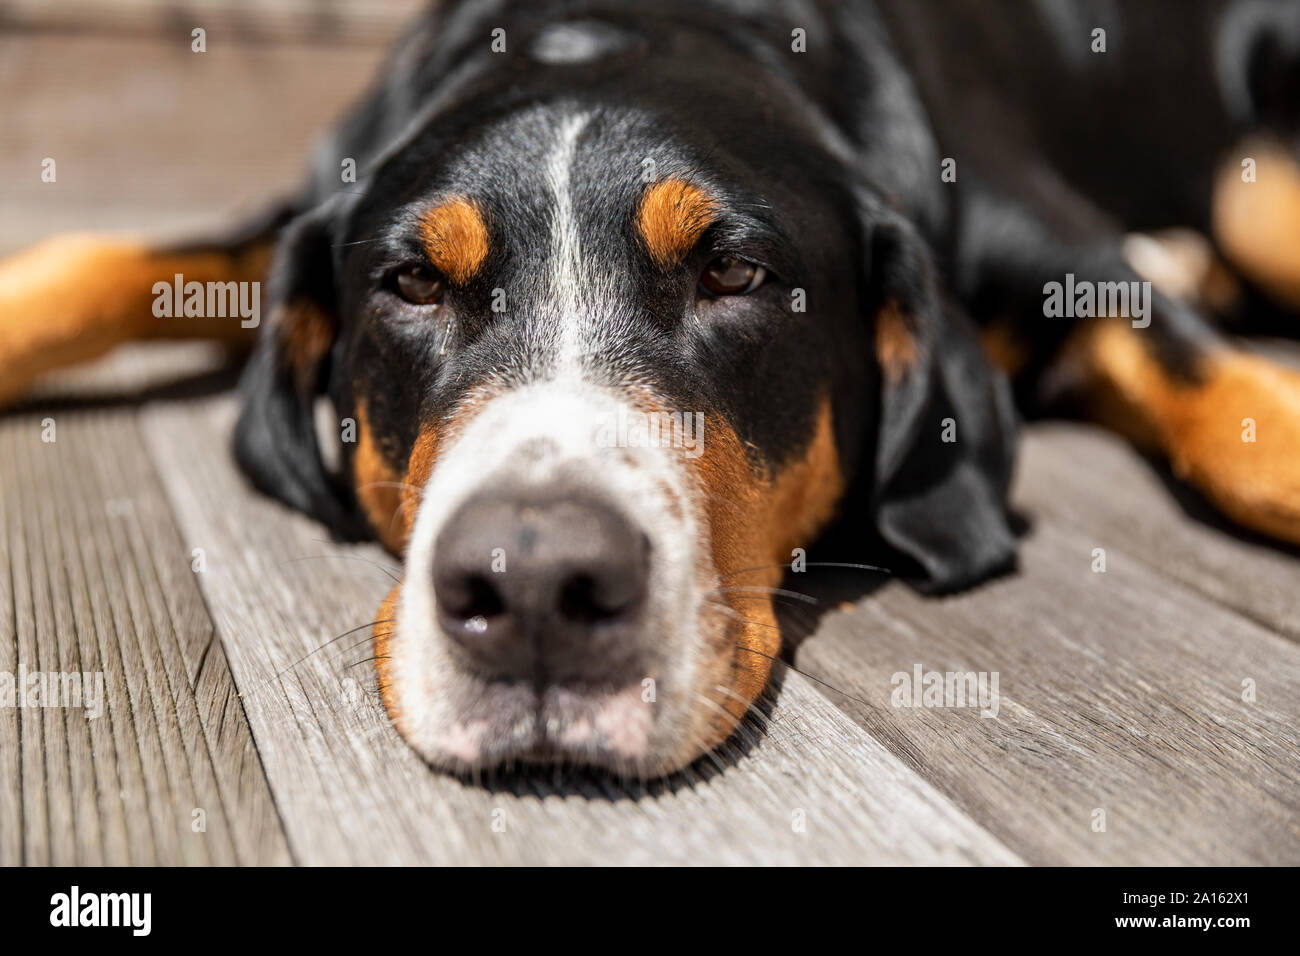 Portrait of sleepy dog lying on terrace Stock Photo